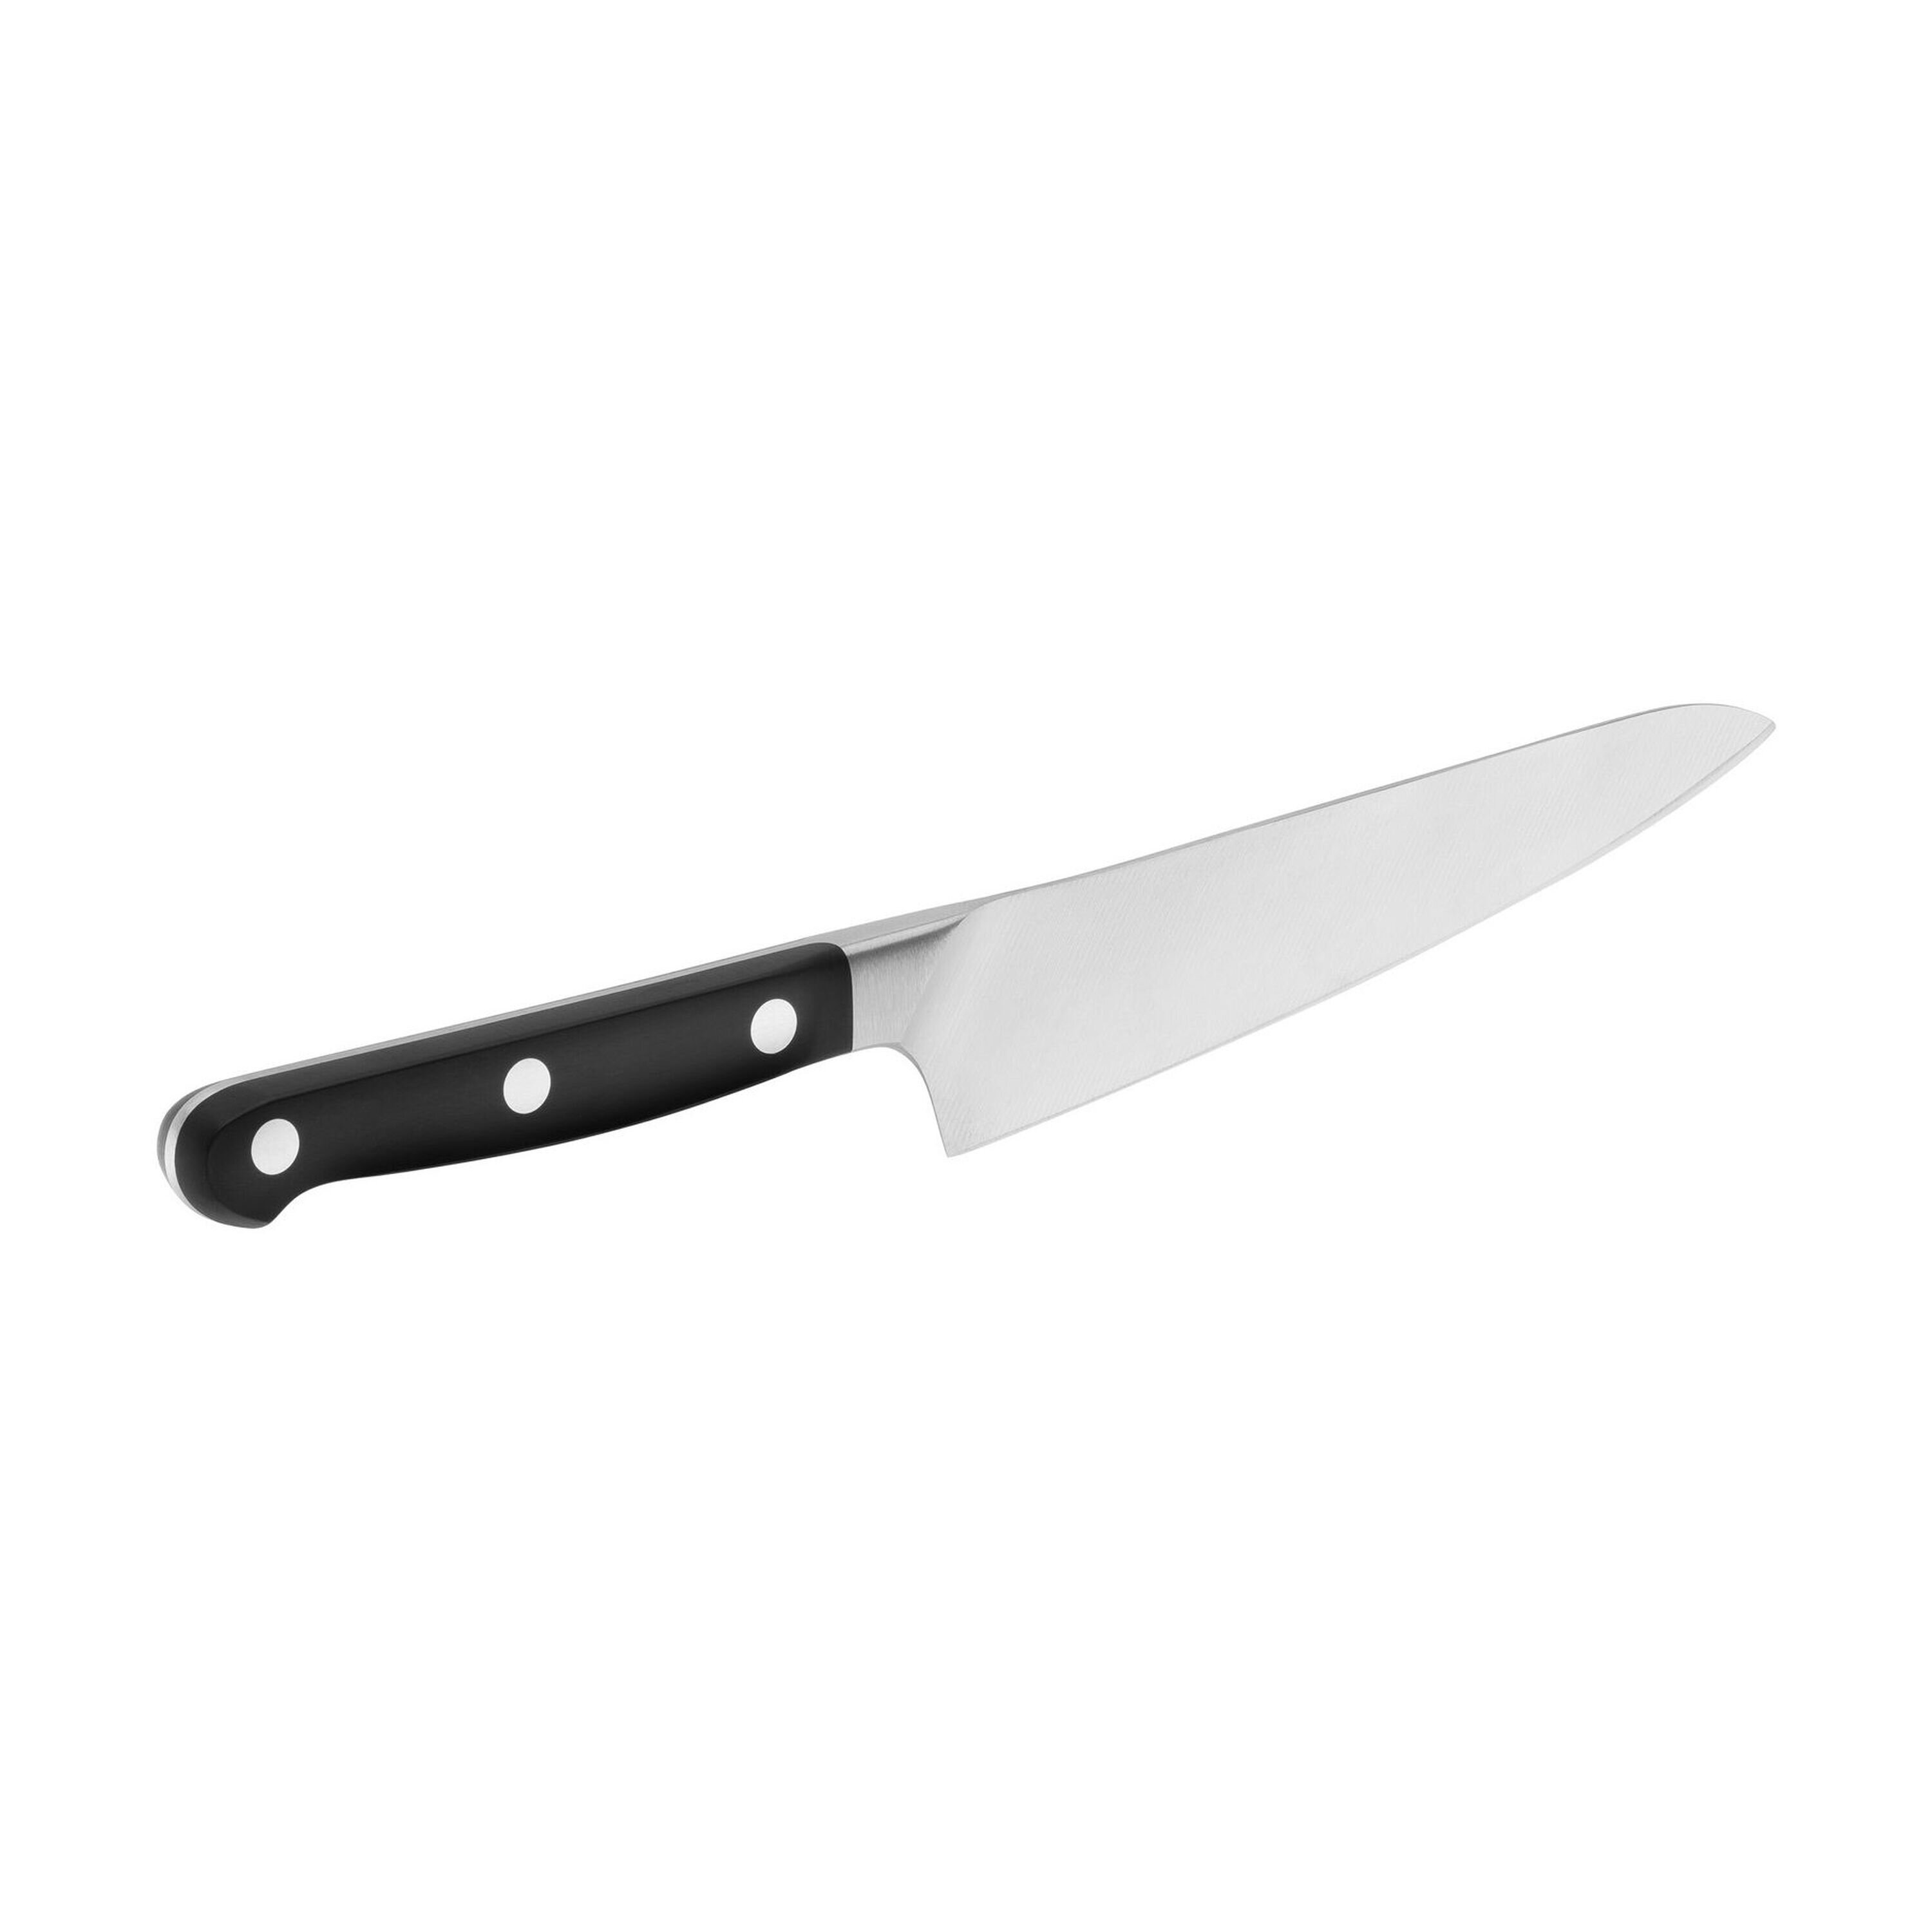 https://assets.wfcdn.com/im/92507750/compr-r85/1684/168406294/zwilling-pro-551-inch-ultimate-prep-knife.jpg